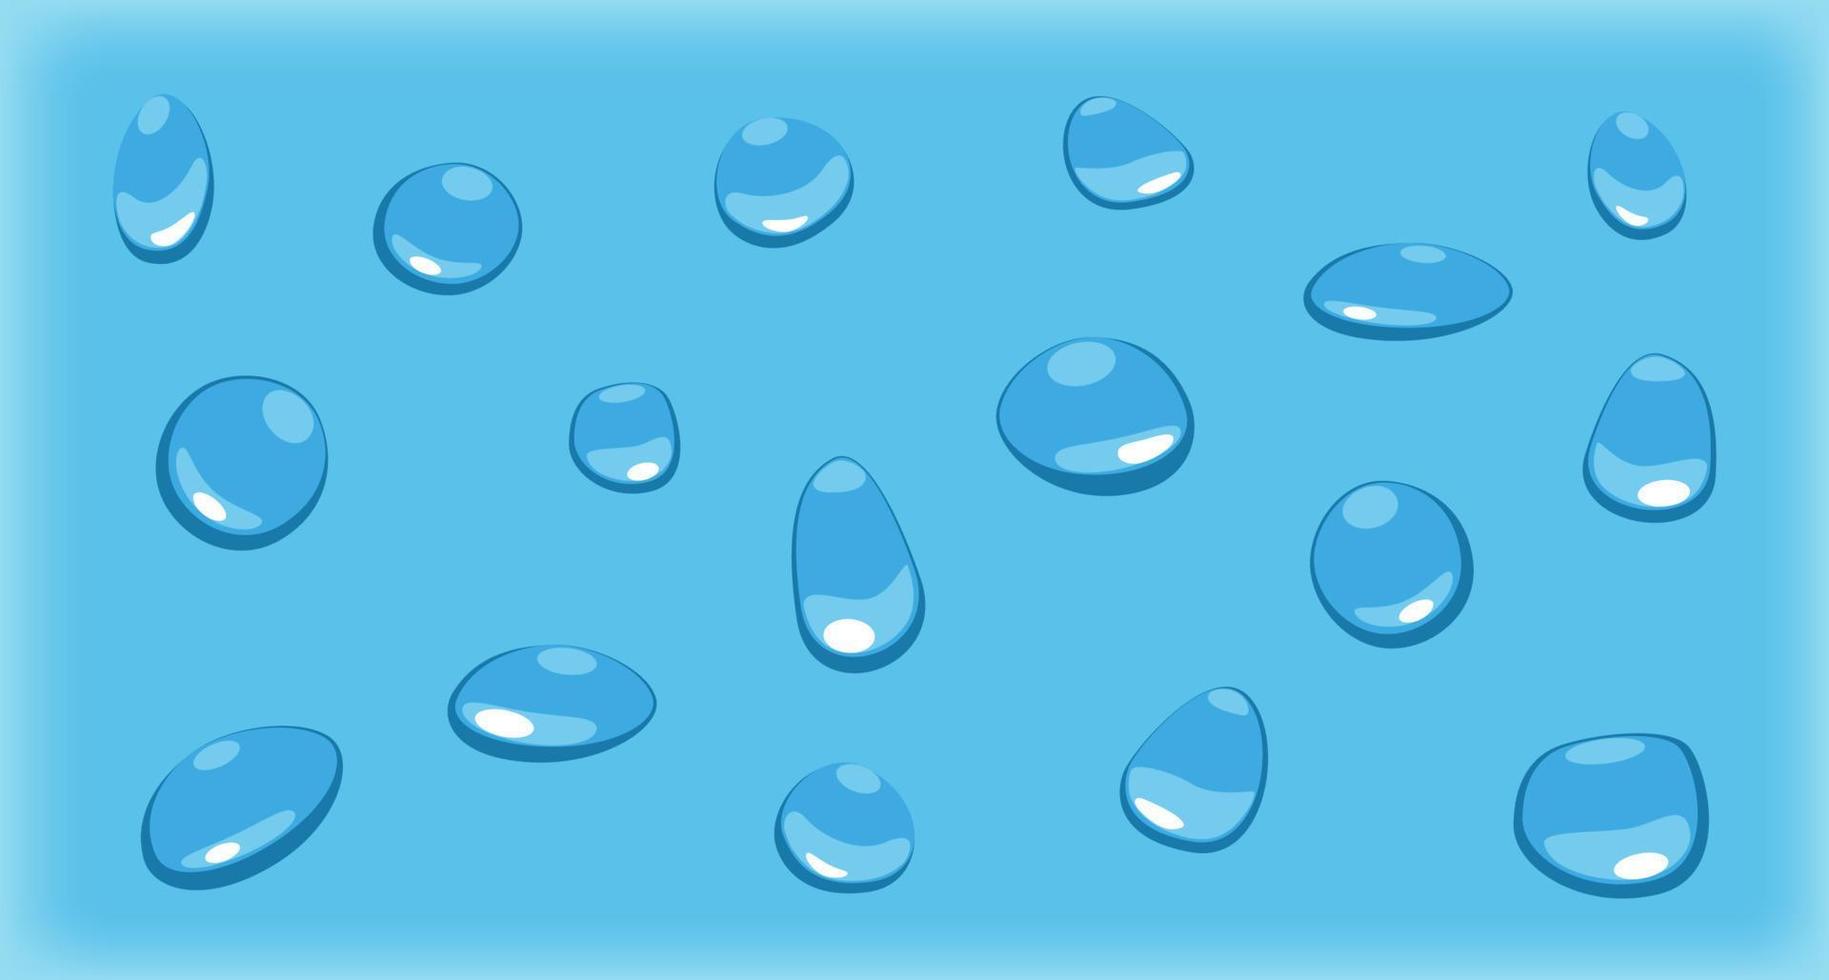 gouttes d'eau bleues isolées vectorielles. ensemble de gouttes différentes dans un style plat vecteur